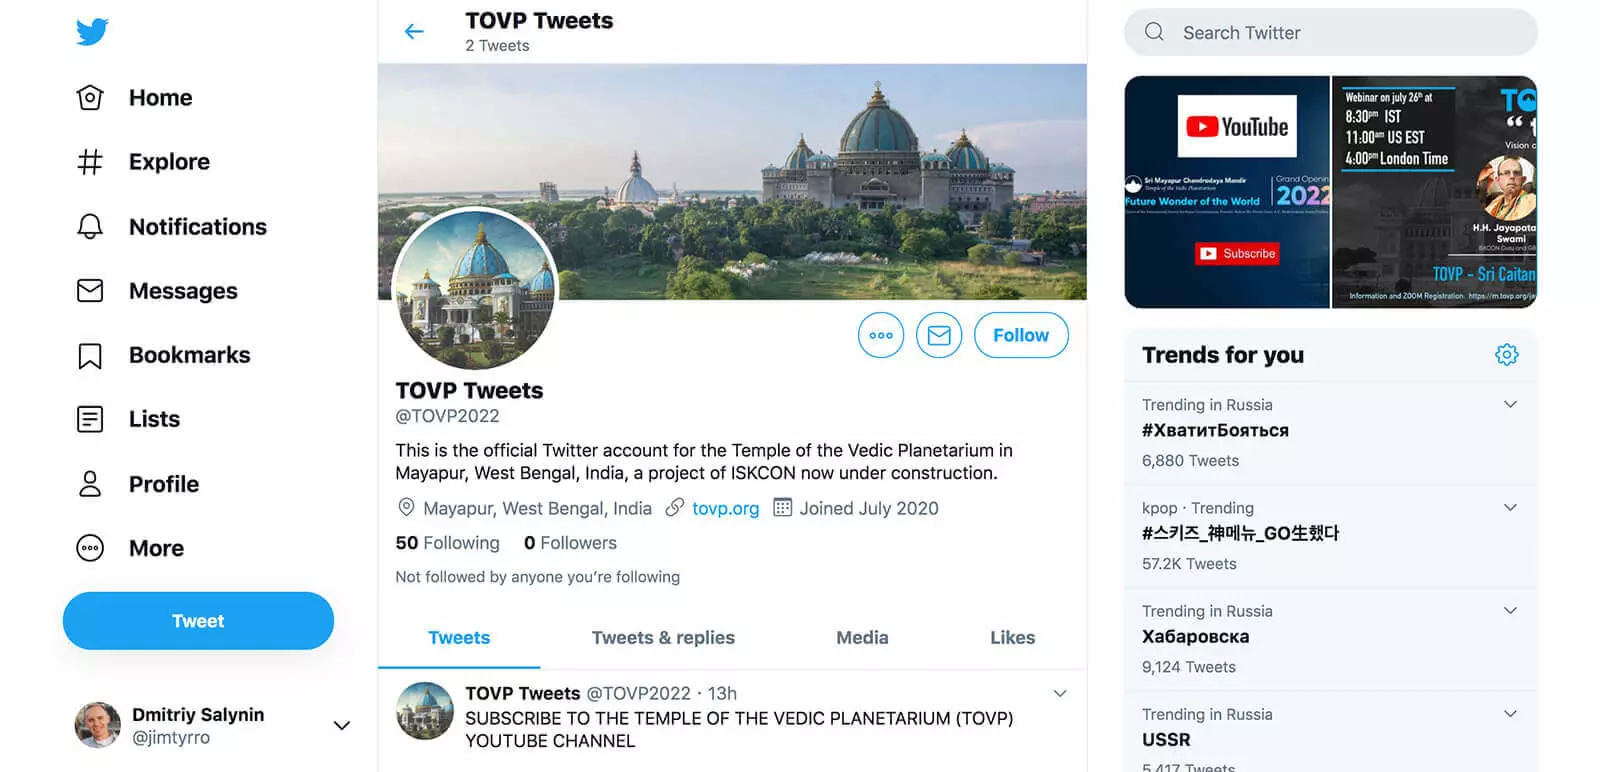 TOVP Tweets page